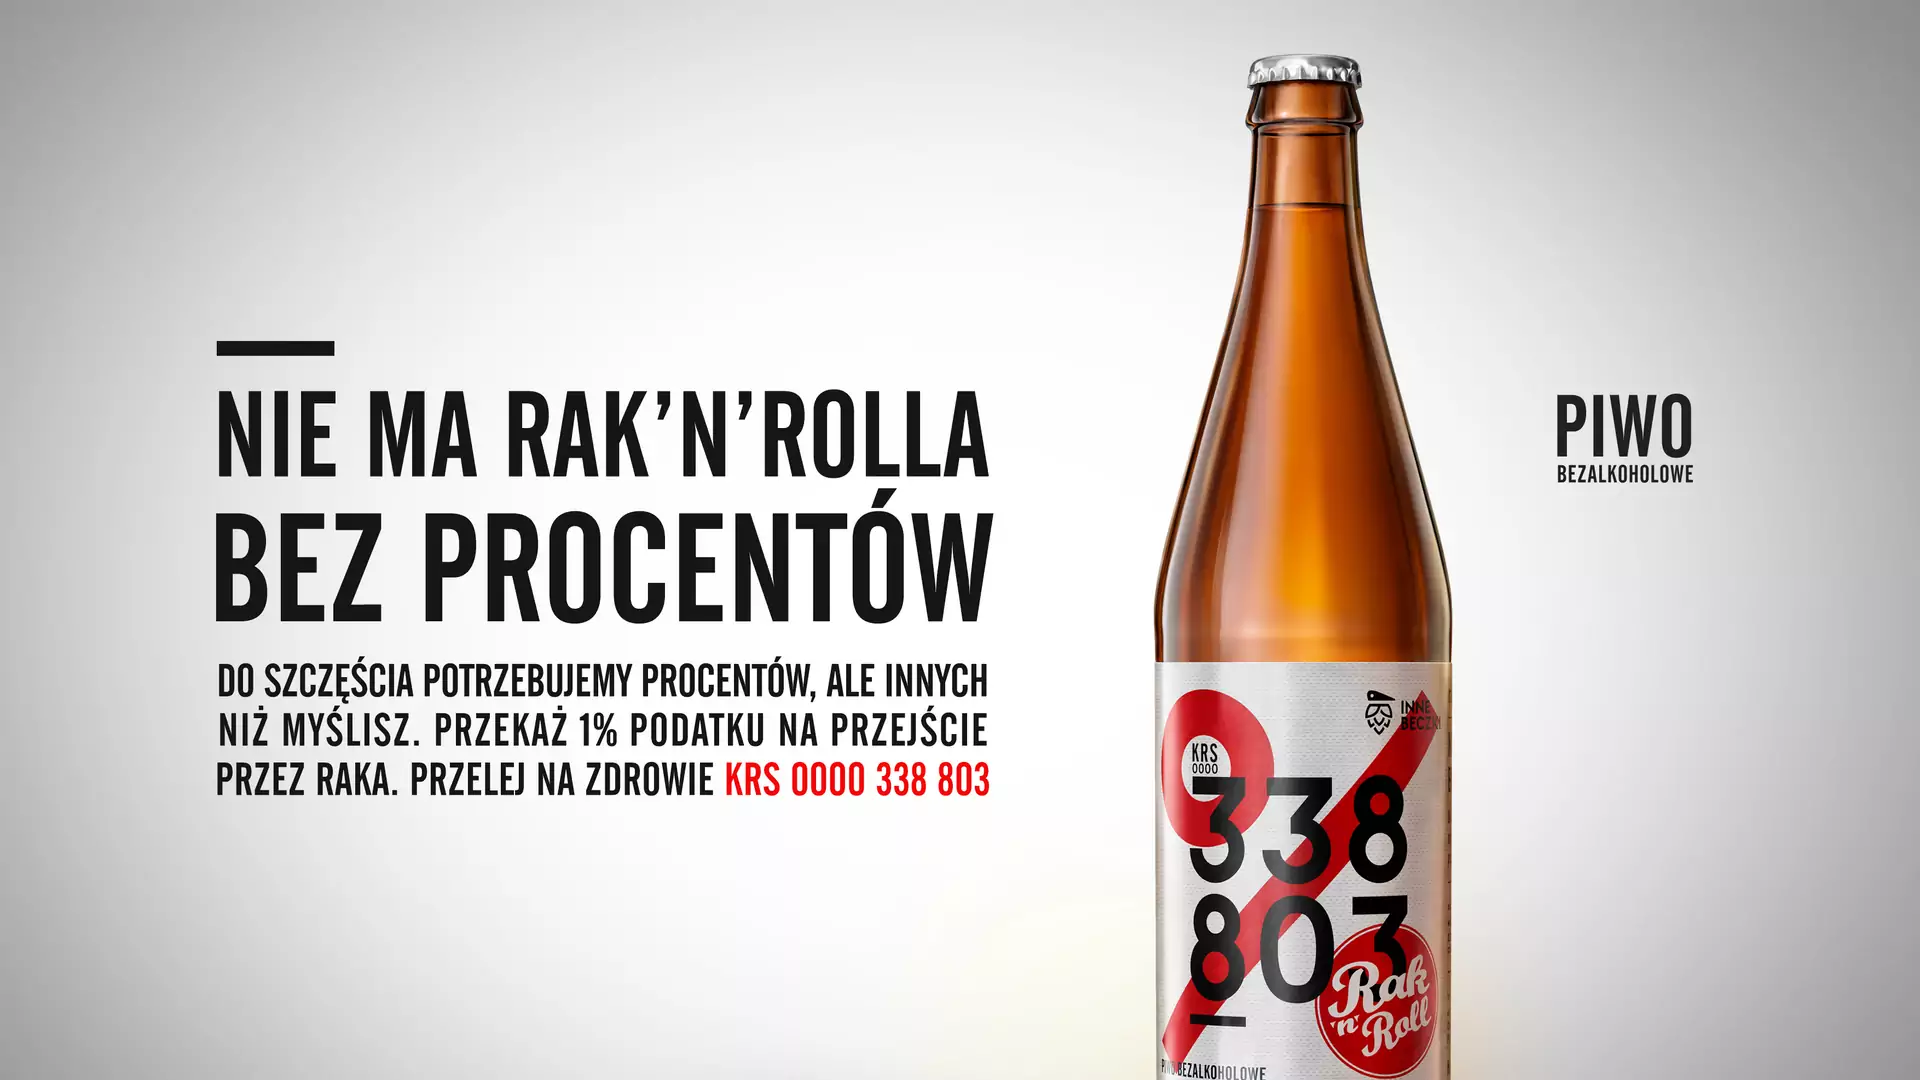 "Do szczęścia potrzebujemy procentów" - fundacja Rak'n'Roll wypuszcza swoje piwo. To część genialnej kampanii